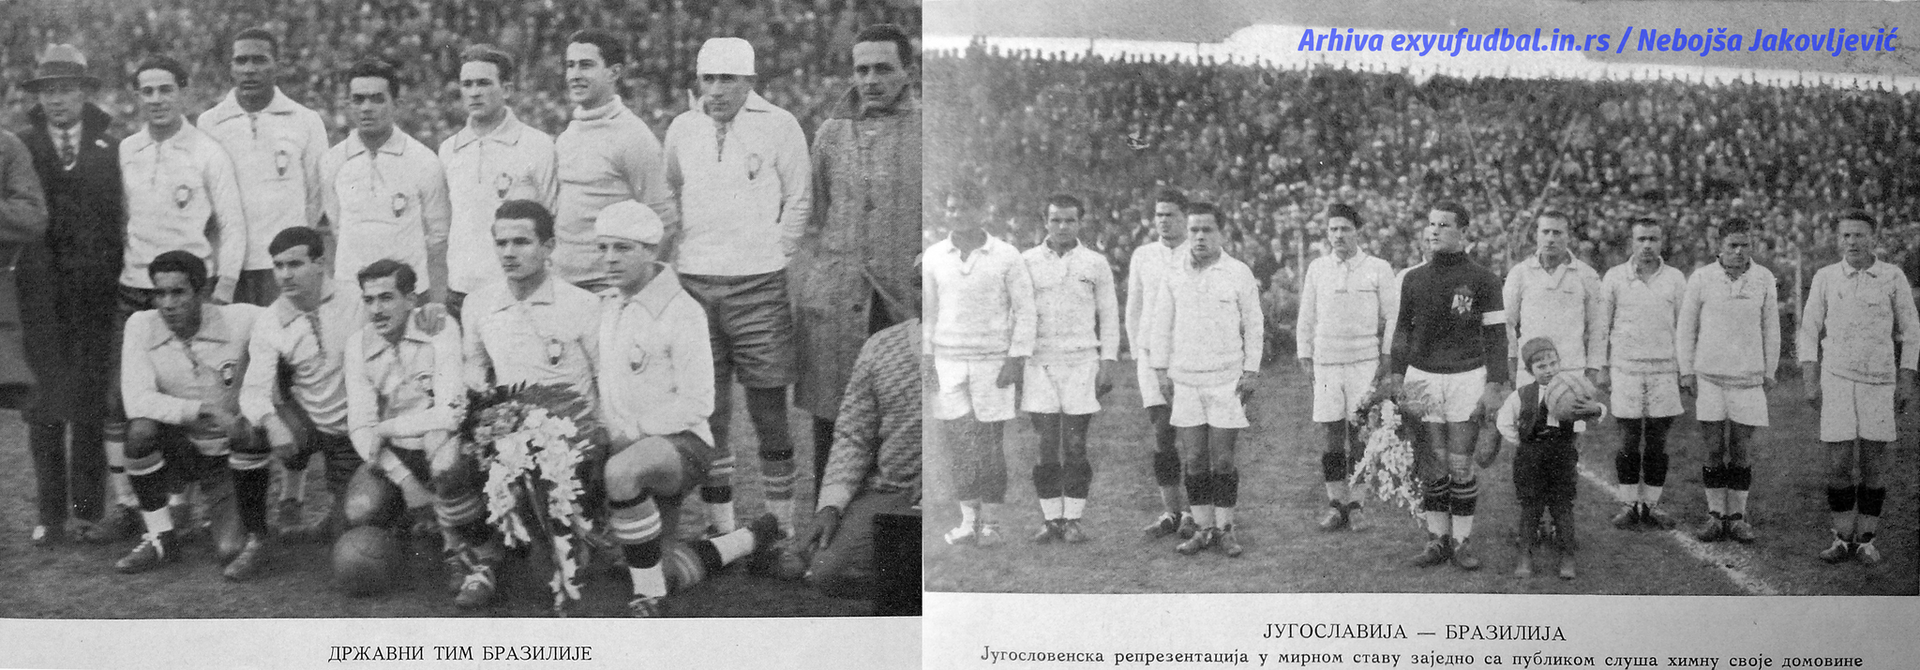 Југославија и Бразил, Уругвај 1930 - Sputnik Србија, 1920, 24.11.2022